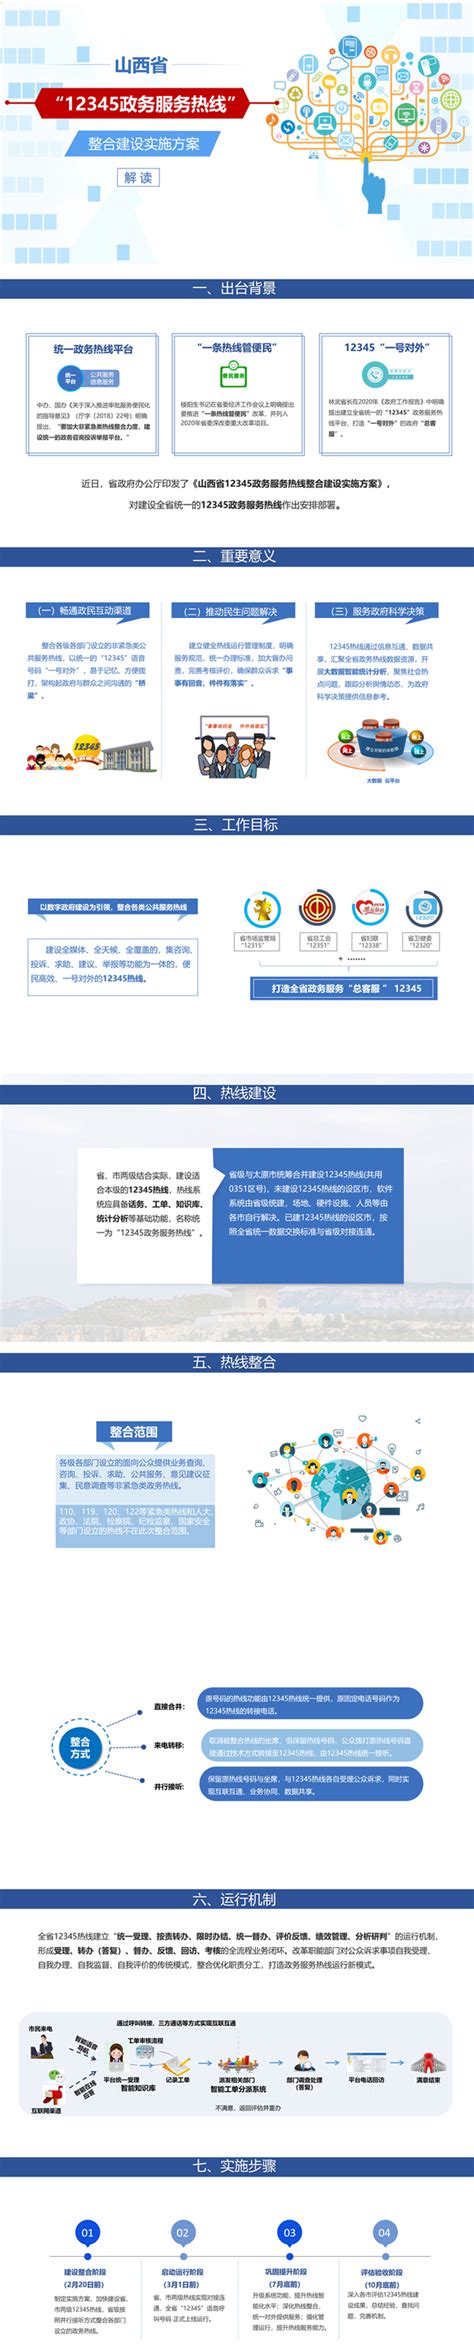 孝义市ZXJB-SMC-03号地块建设项目规划设计方案批前公示_孝义市人民政府门户网站